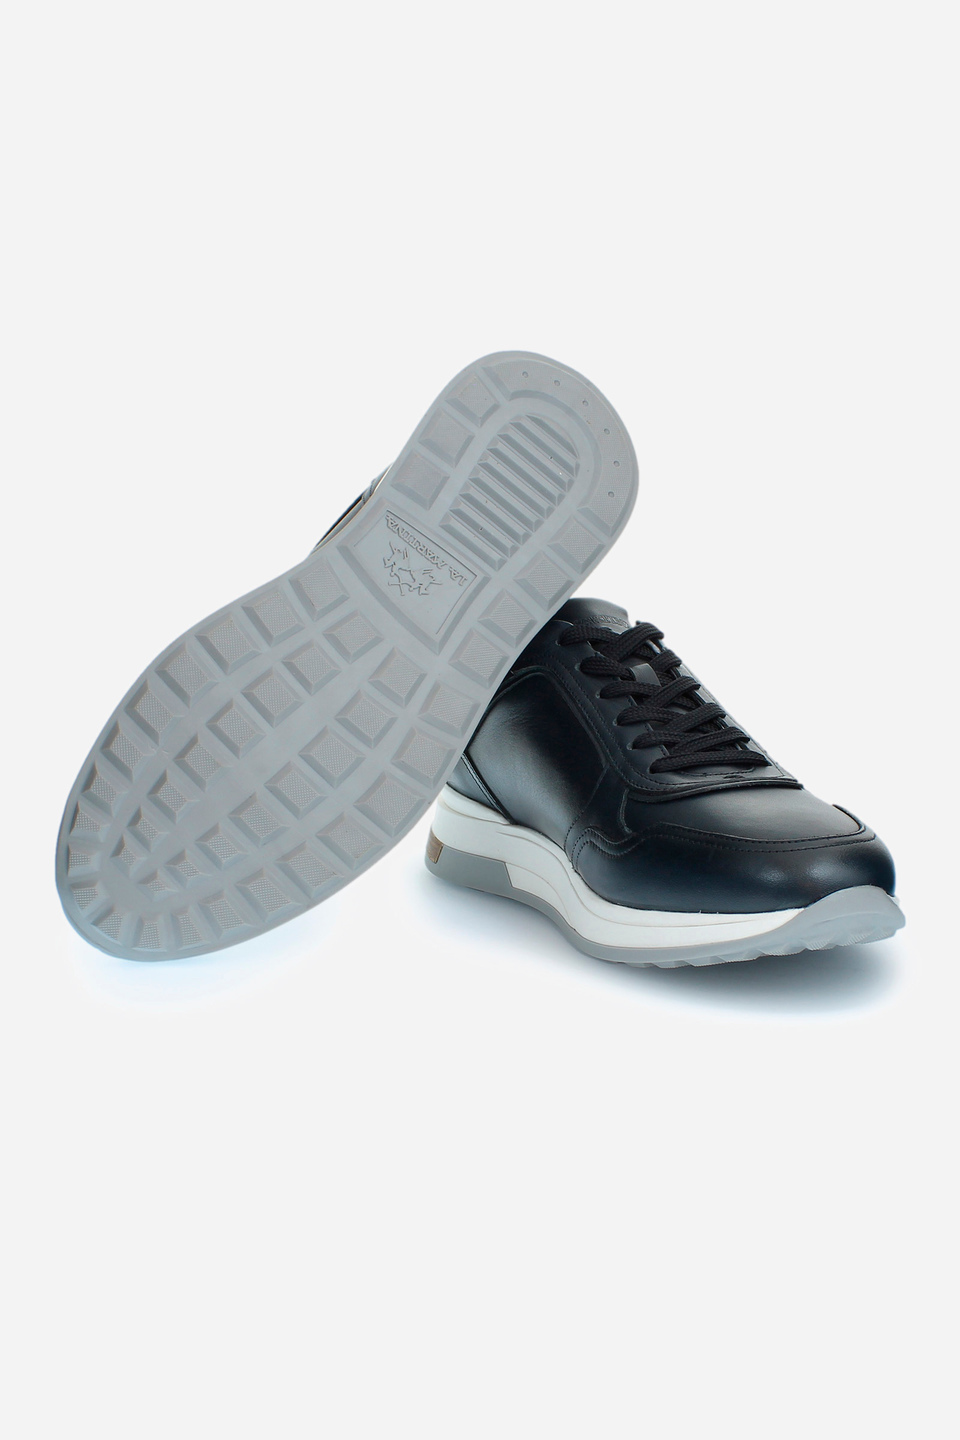 Herren-Sneaker mit erhöhter Sohle | La Martina - Official Online Shop